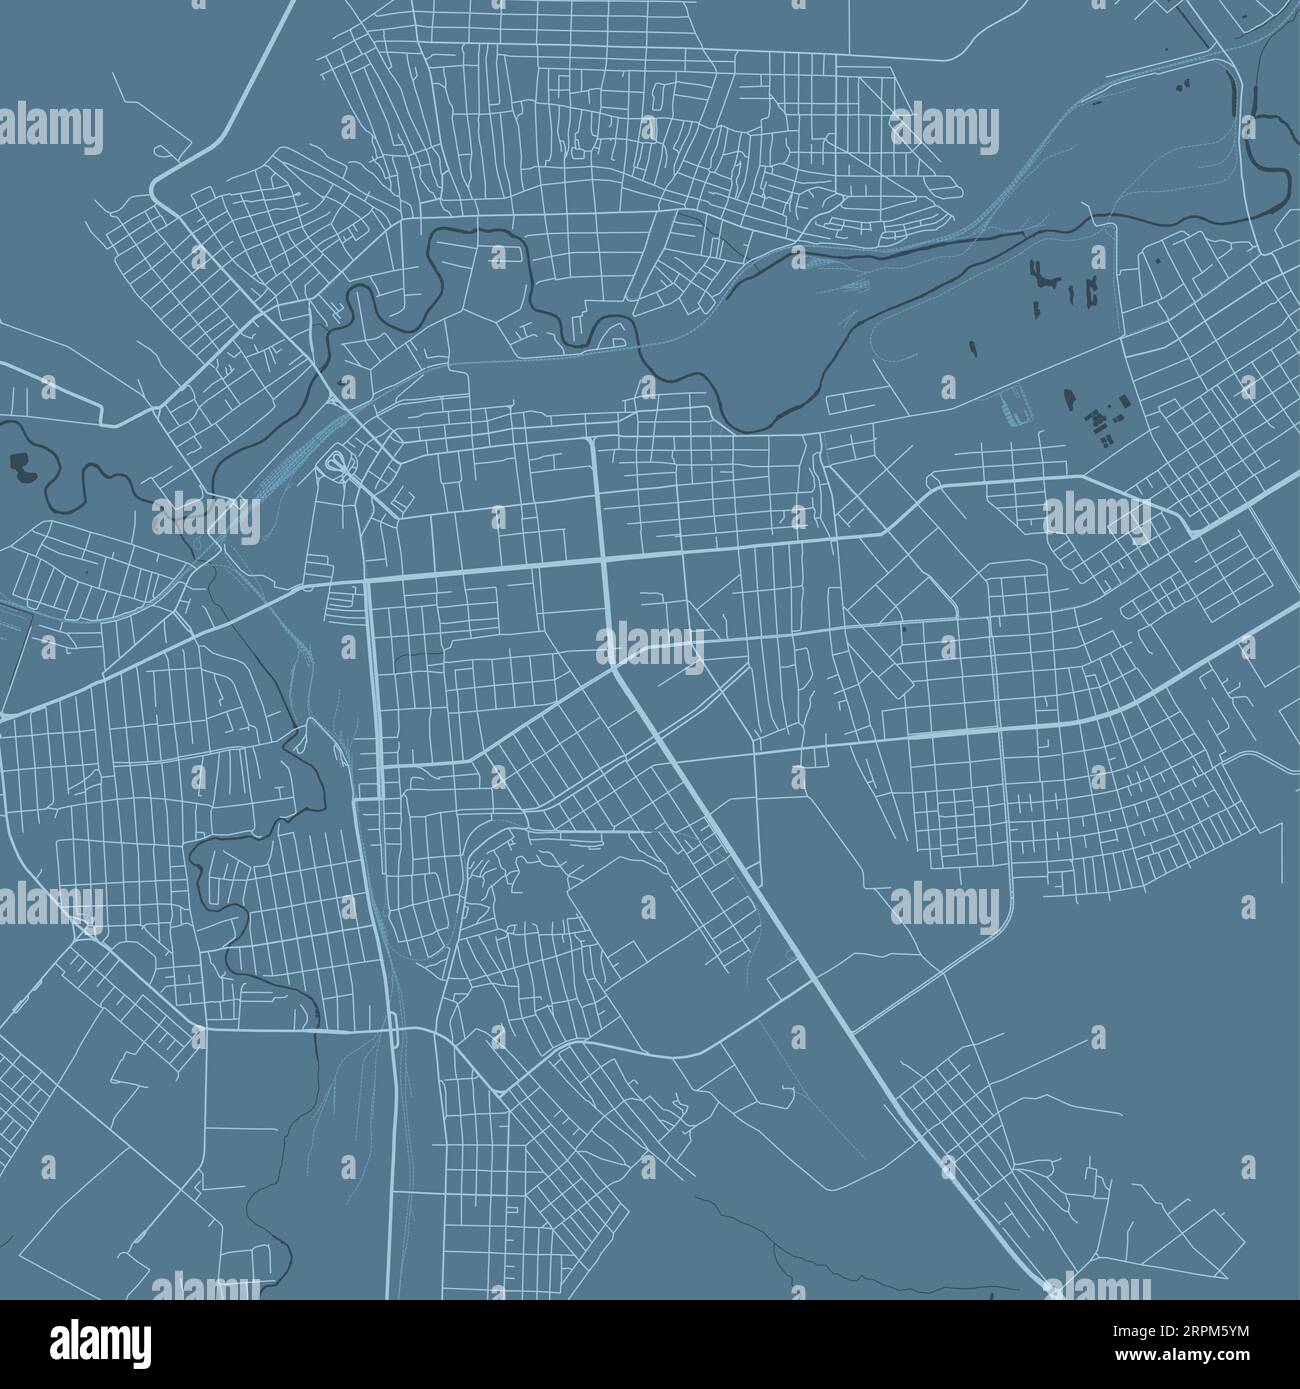 Carte de Blue Luhansk, Ukraine, carte détaillée de la municipalité, panorama Skyline. Carte touristique graphique décorative du territoire de Louhansk. Vecteur libre de droit illus Illustration de Vecteur